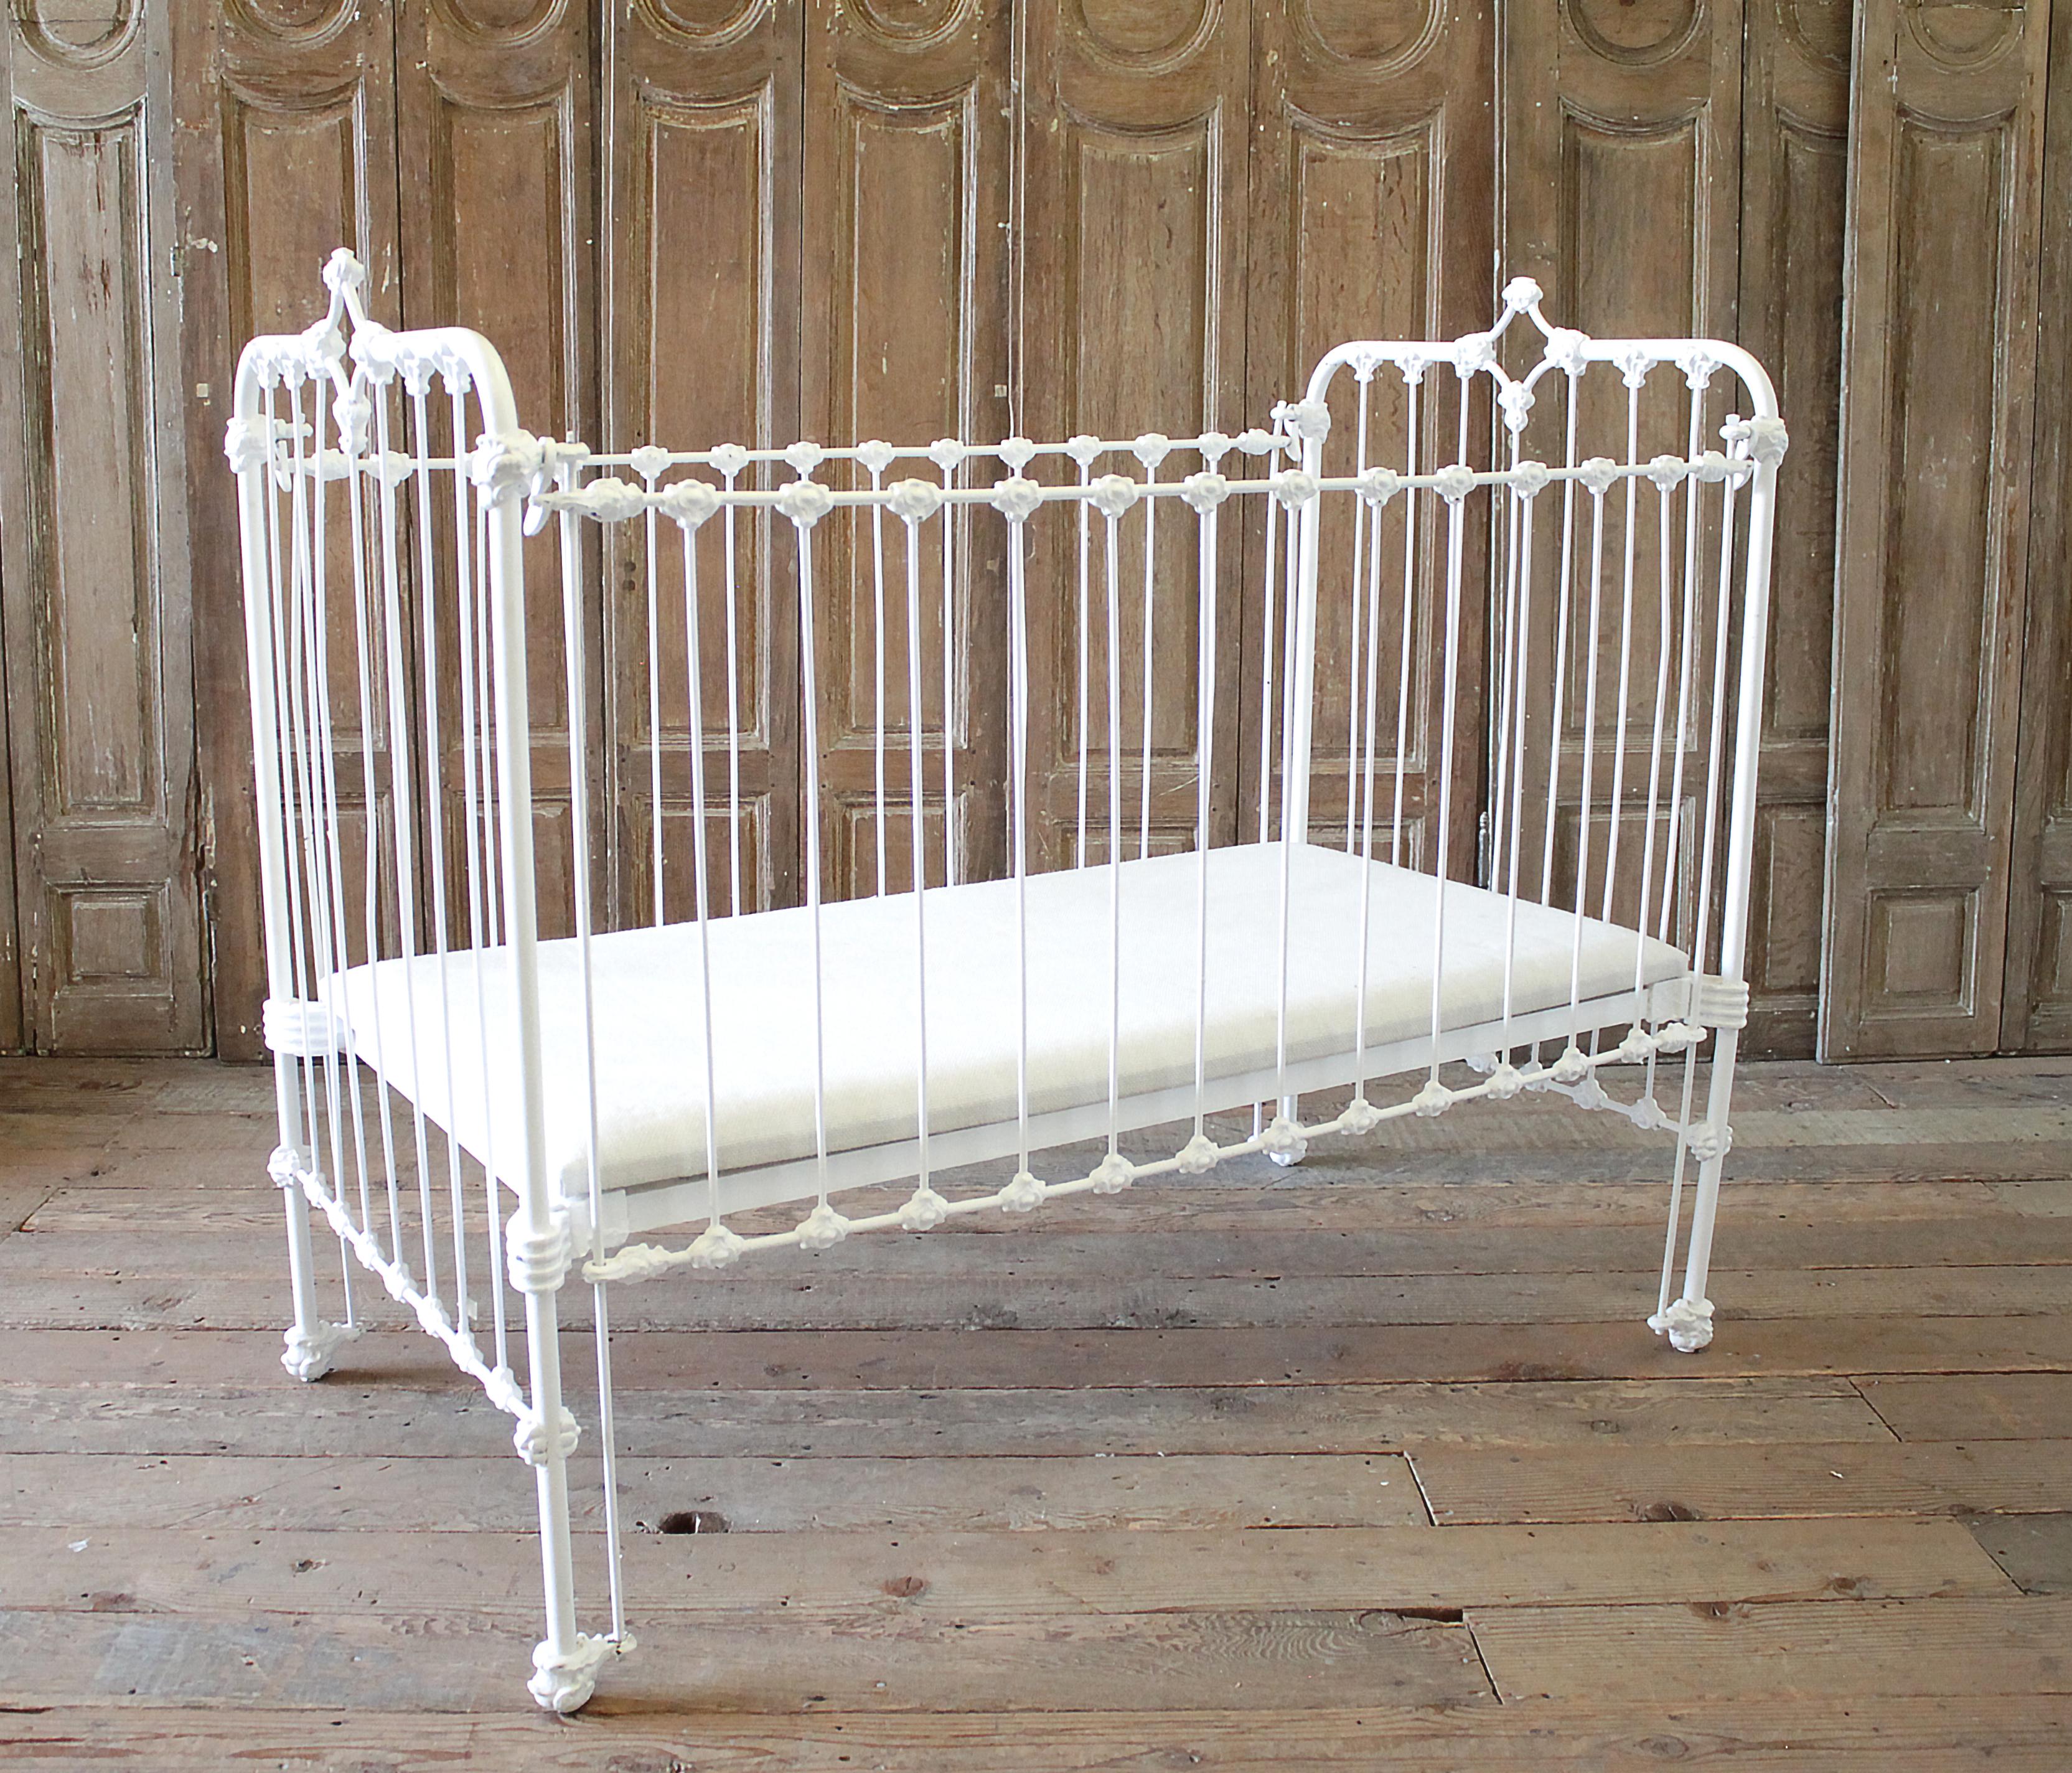 antique baby crib value